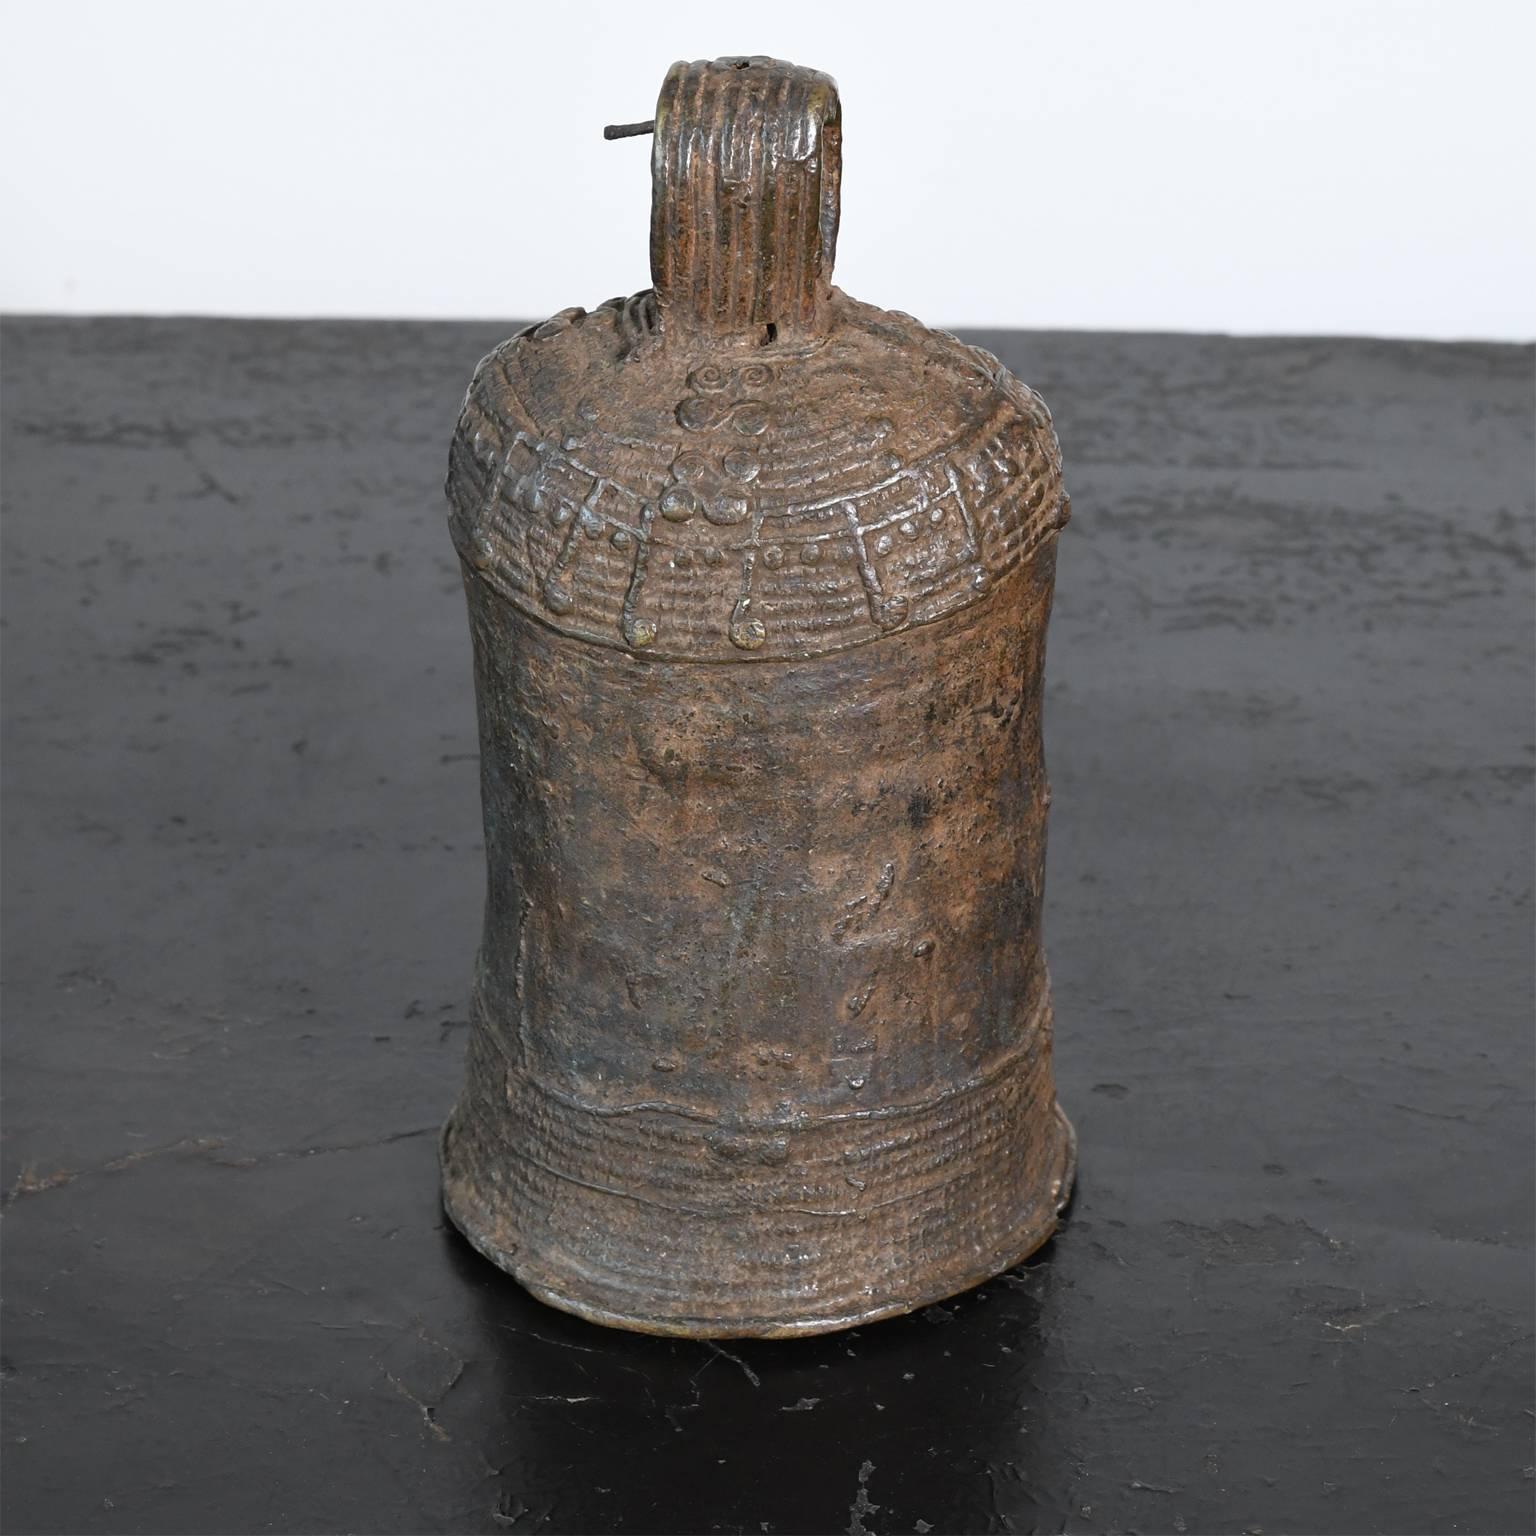 Traditionelle Stammesglocke aus Bronze vom Volk der Igbo in Westafrika. Hergestellt im Wachsausschmelzverfahren durch die Igbo- oder Igala-Metallschmiede. Die Glocken der afrikanischen Stämme wurden für eine Vielzahl von Zwecken verwendet, z. B. um